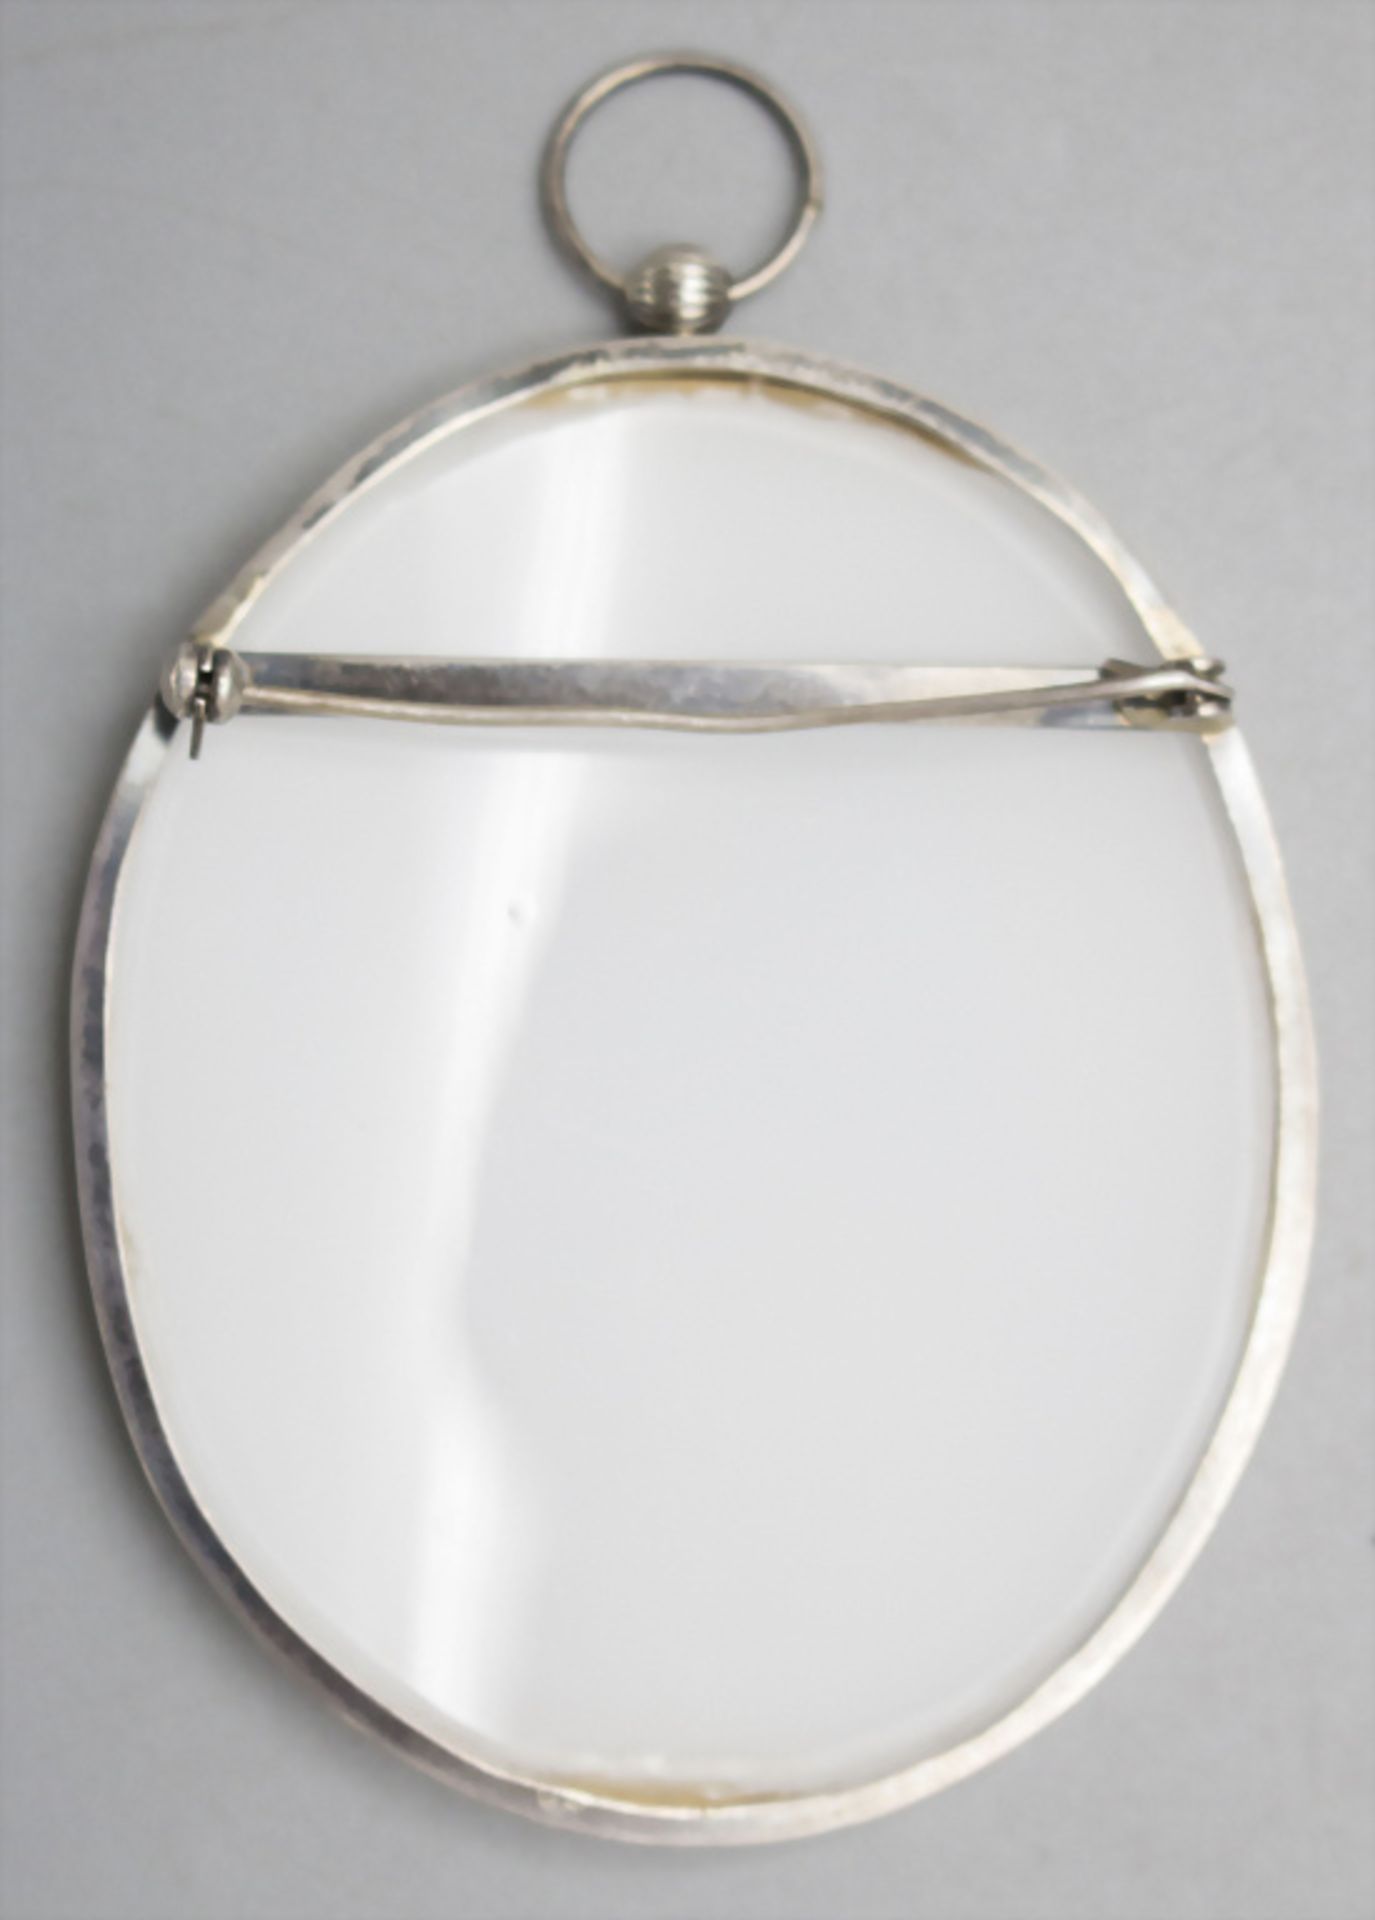 Porzellan-Brosche oder Anhänger / A porcelain brooch or pendant, deutsch, 19. Jh. - Image 2 of 3